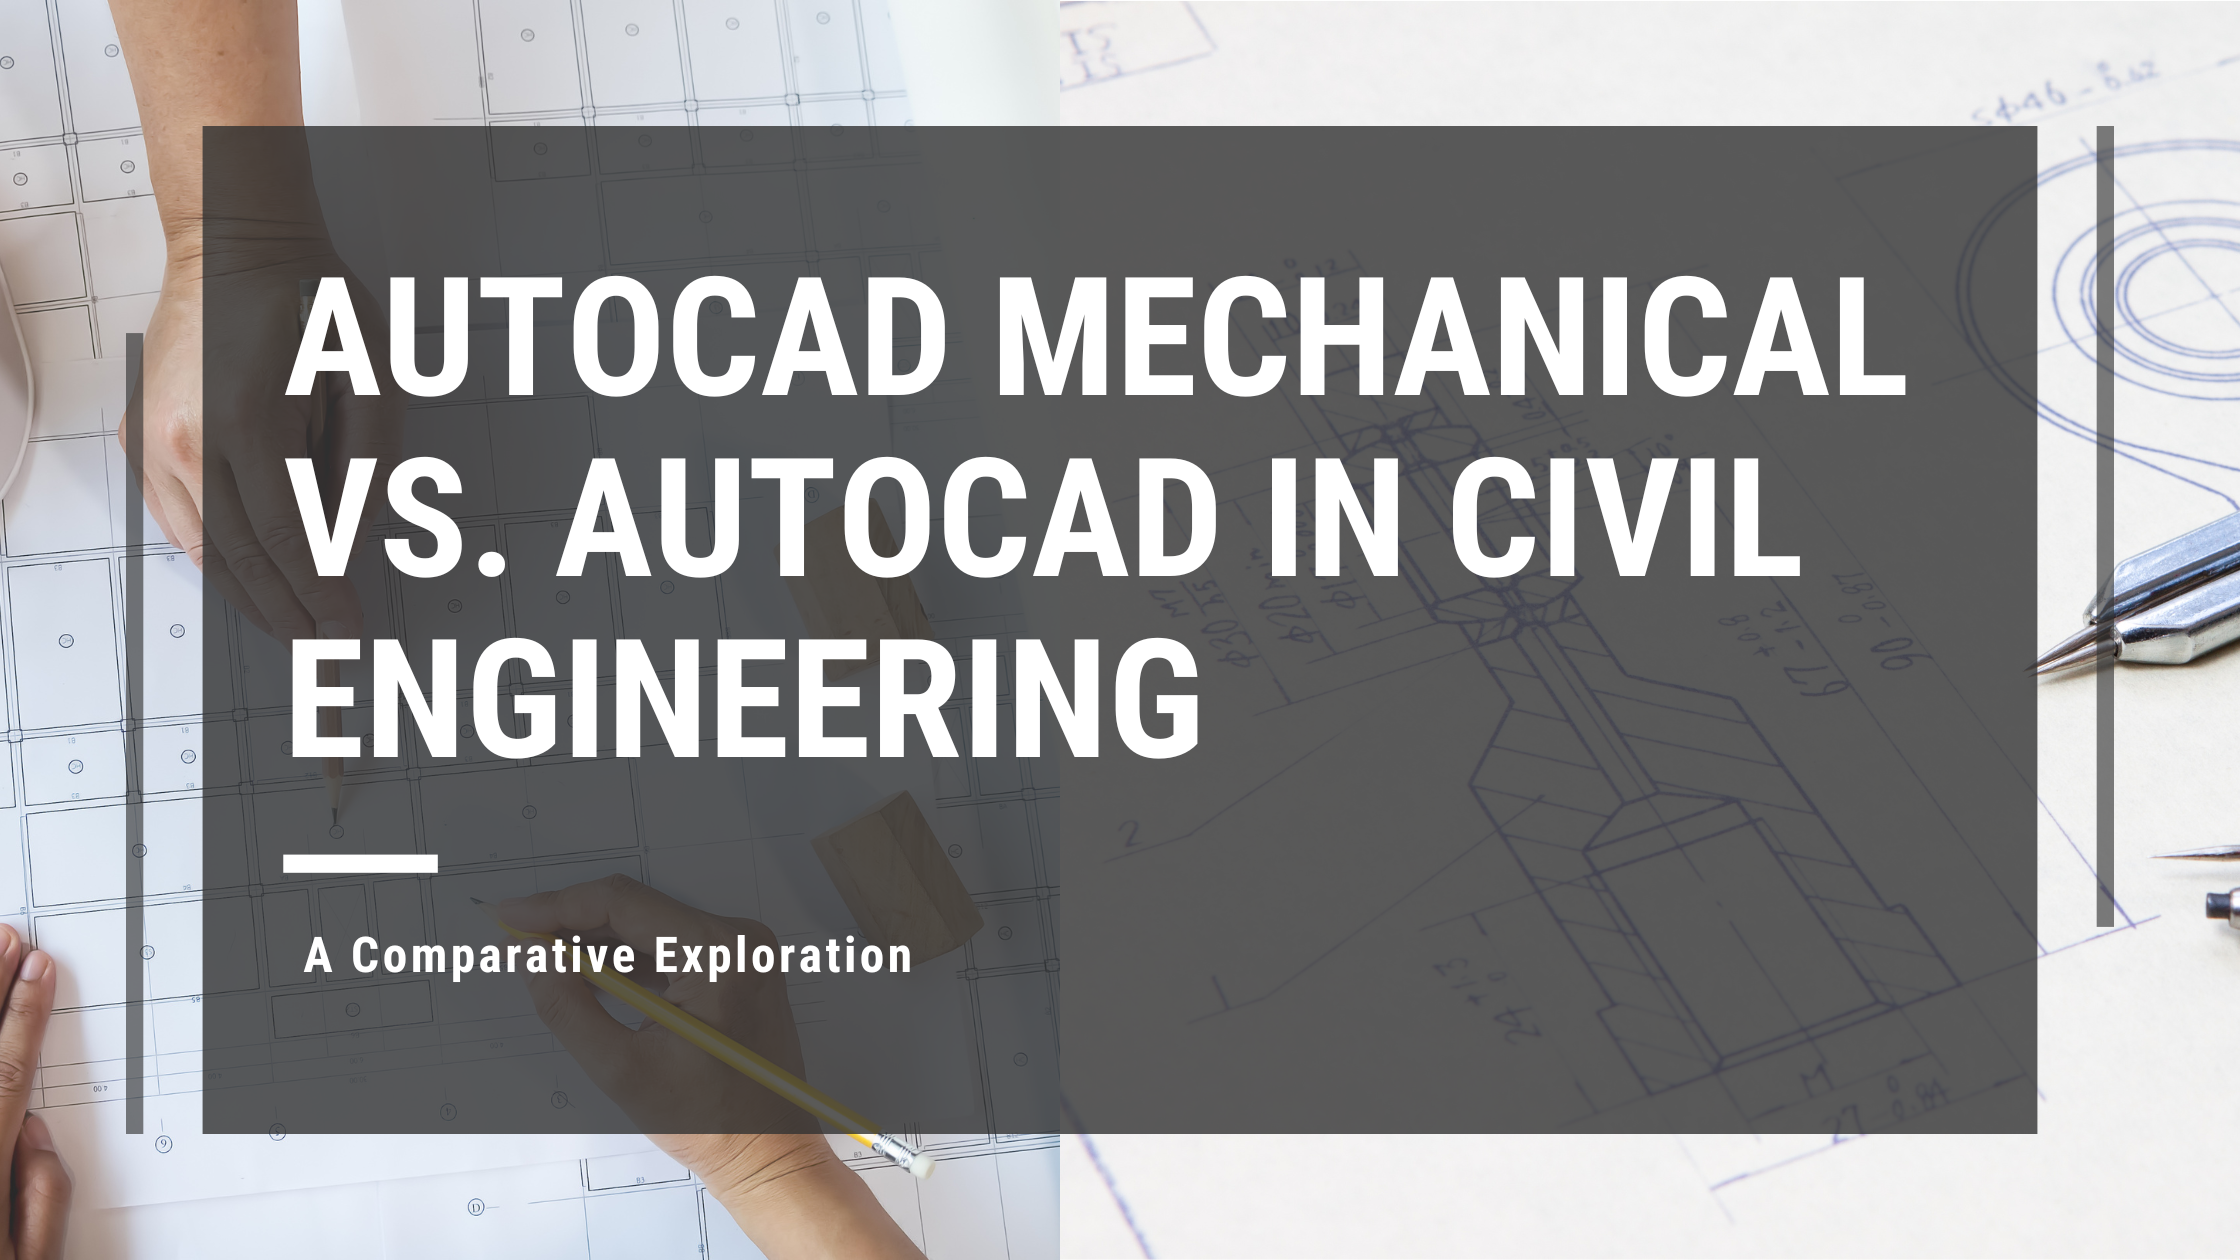 AutoCAD Mechanical vs AutoCAD Civil